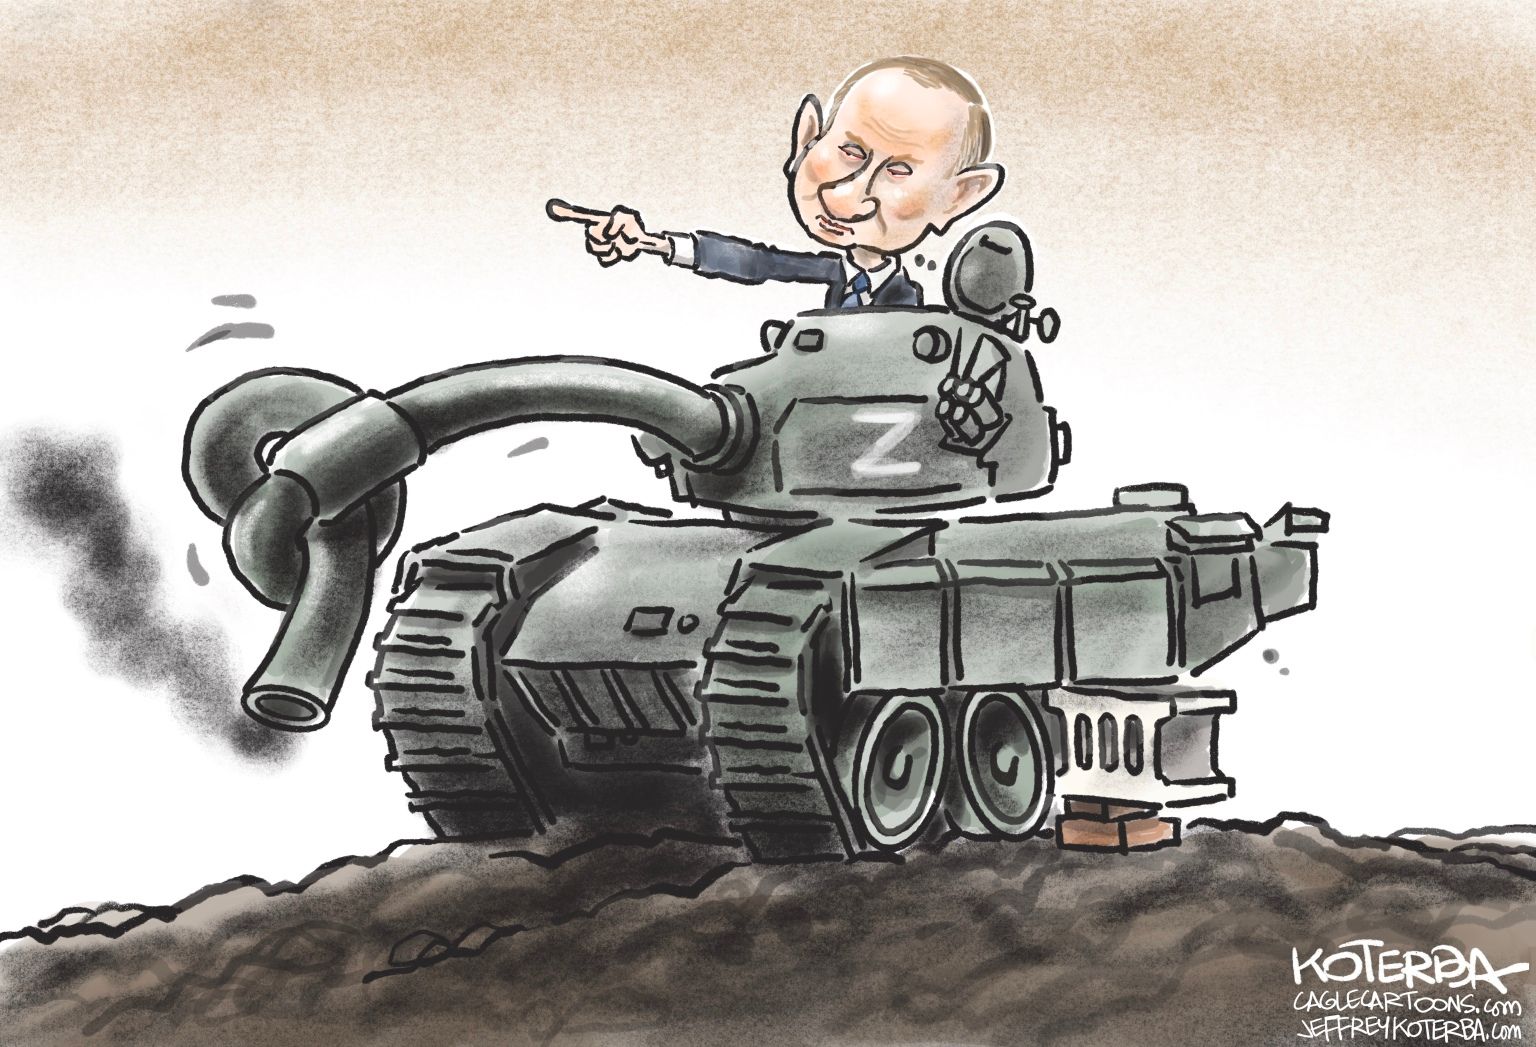 Putin in Knots - newsjustin.press - editorial cartoon